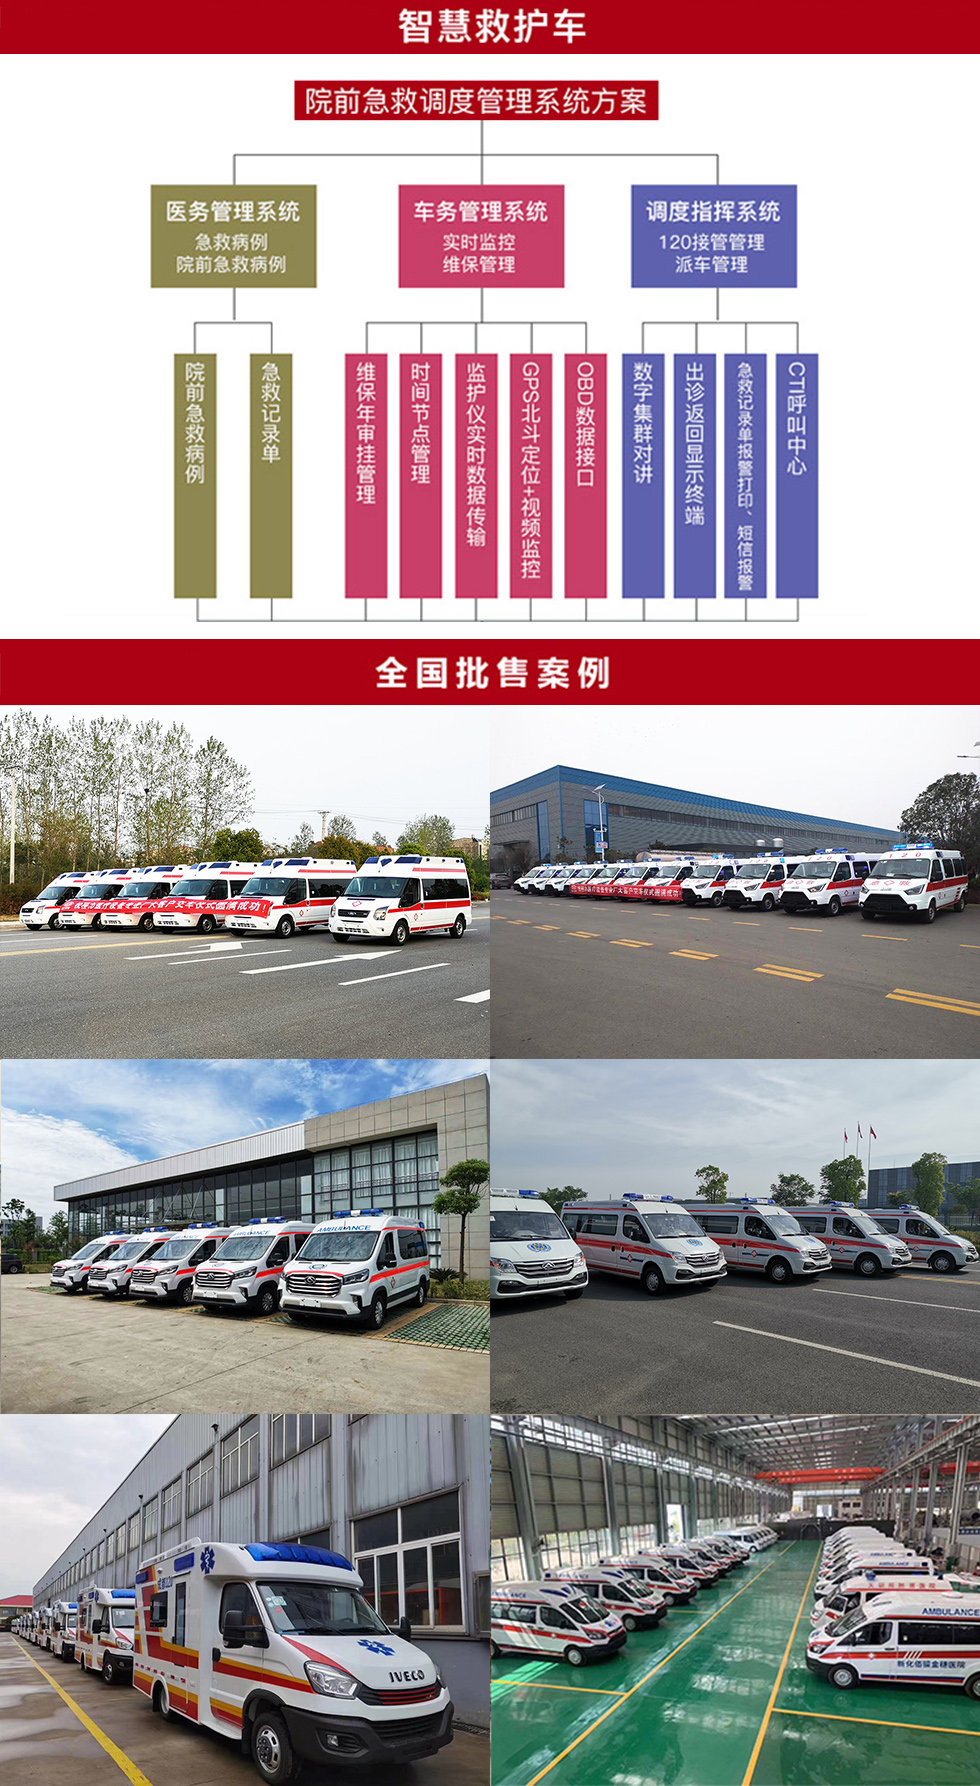 福田风景G9监护型救护车